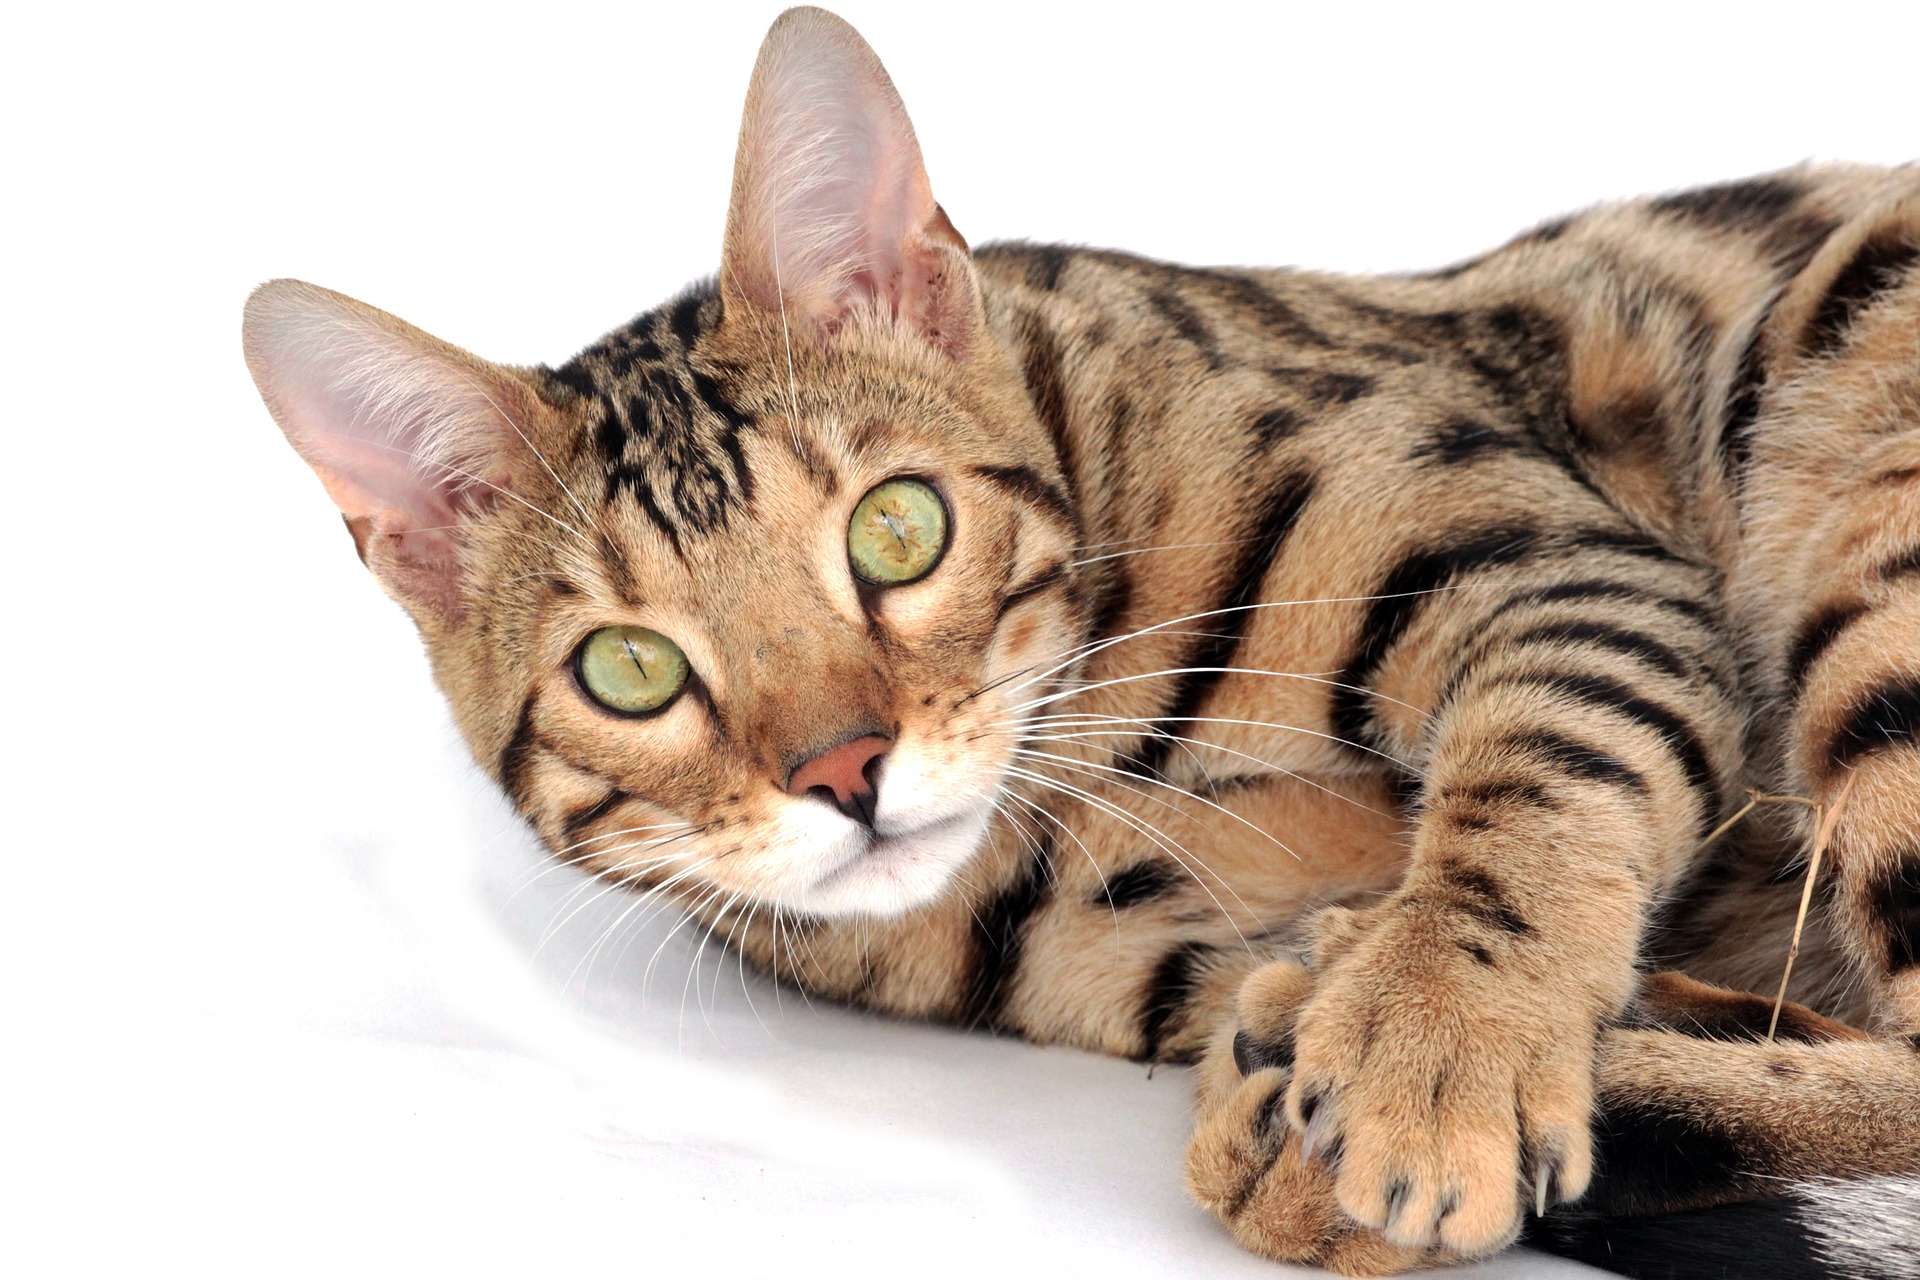 En tant que race de chat de grande taille, les chats du Bengale ont besoin d'un grand griffoir et d'une alimentation appropriée, riche en protéines animales.